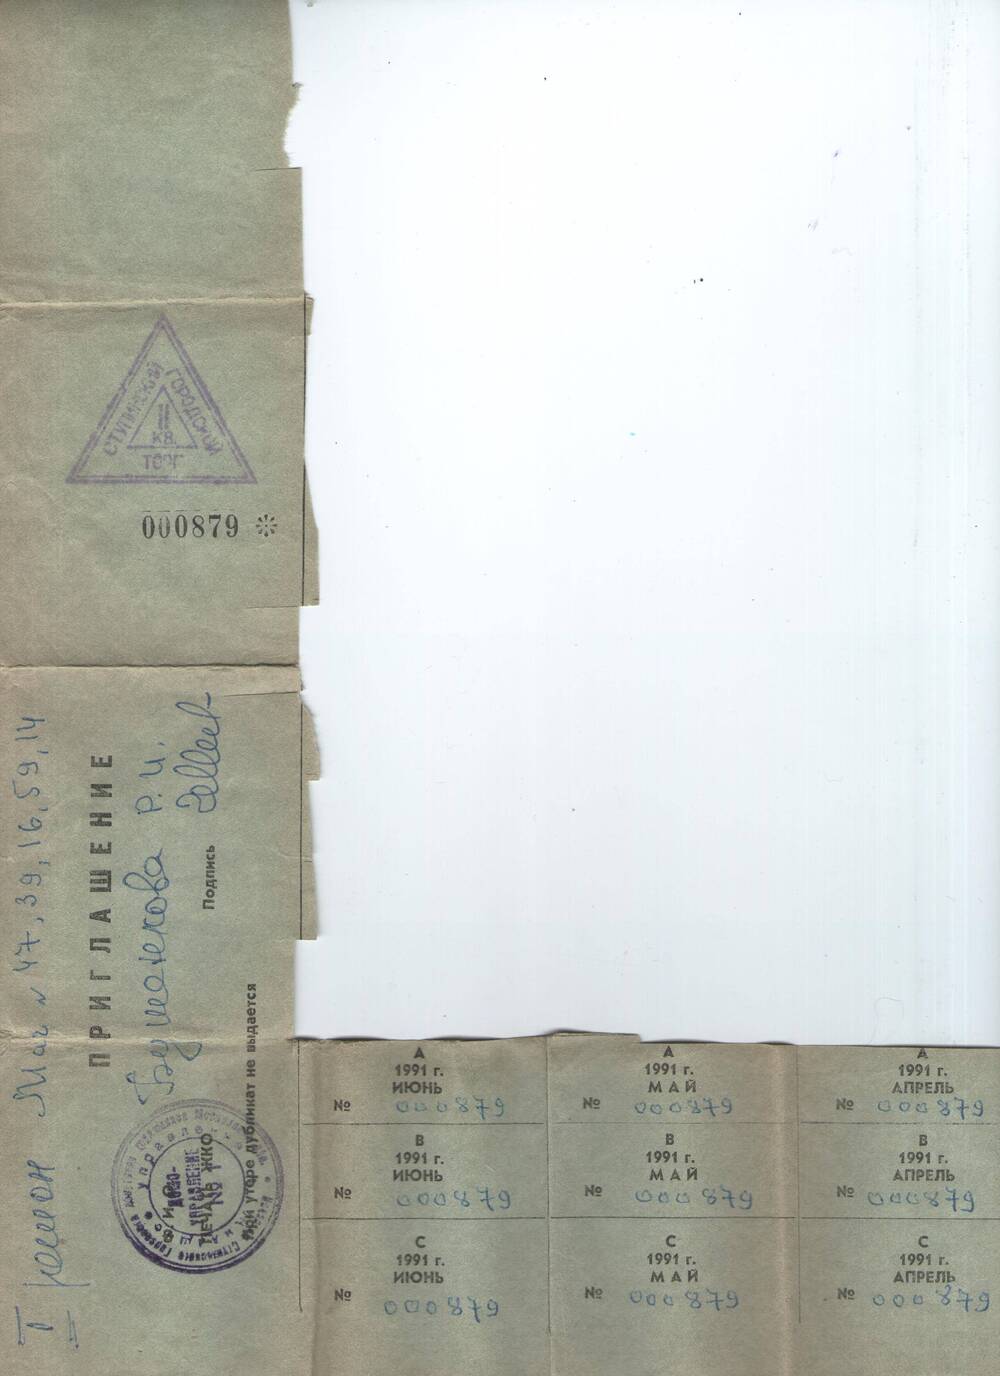 Приглашение  № 000879 с талоном  на товары категории АВС  на апрель - июнь 1991 года